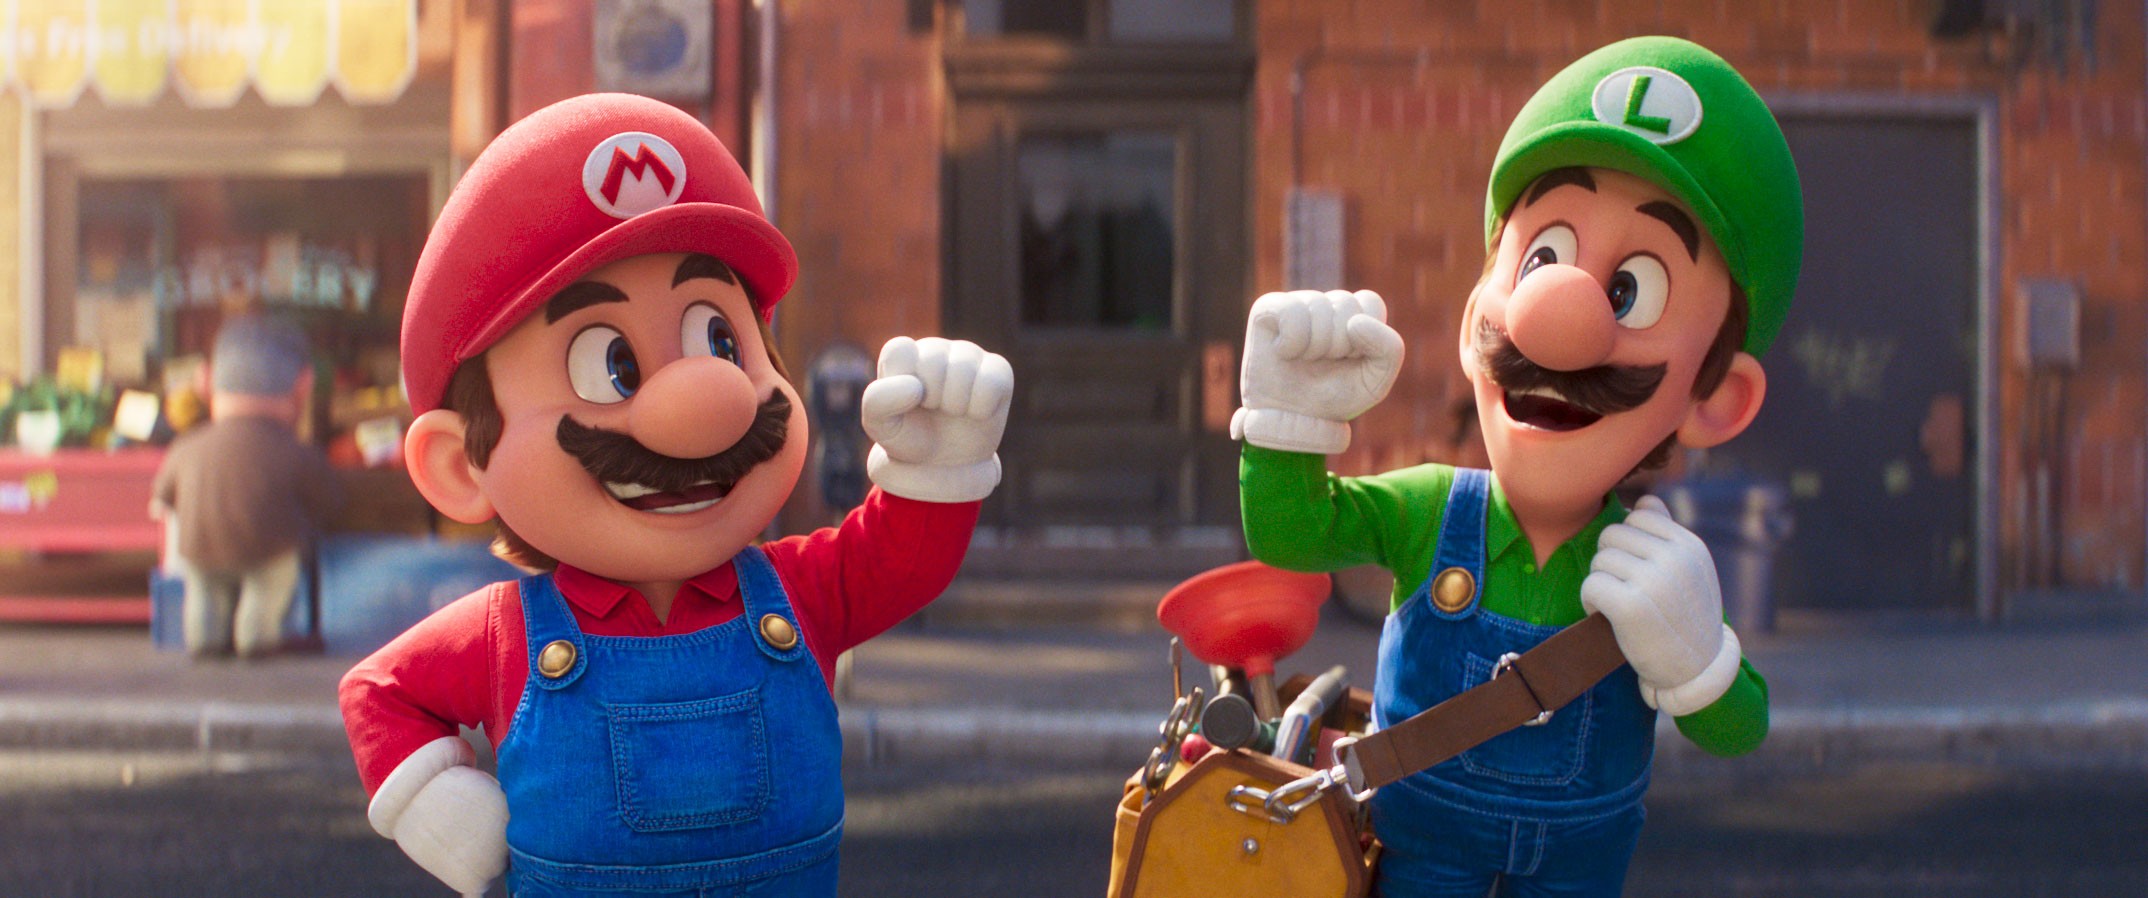 Como a trilha de 'Mario' virou marco cultural além dos games e influenciou a música pop